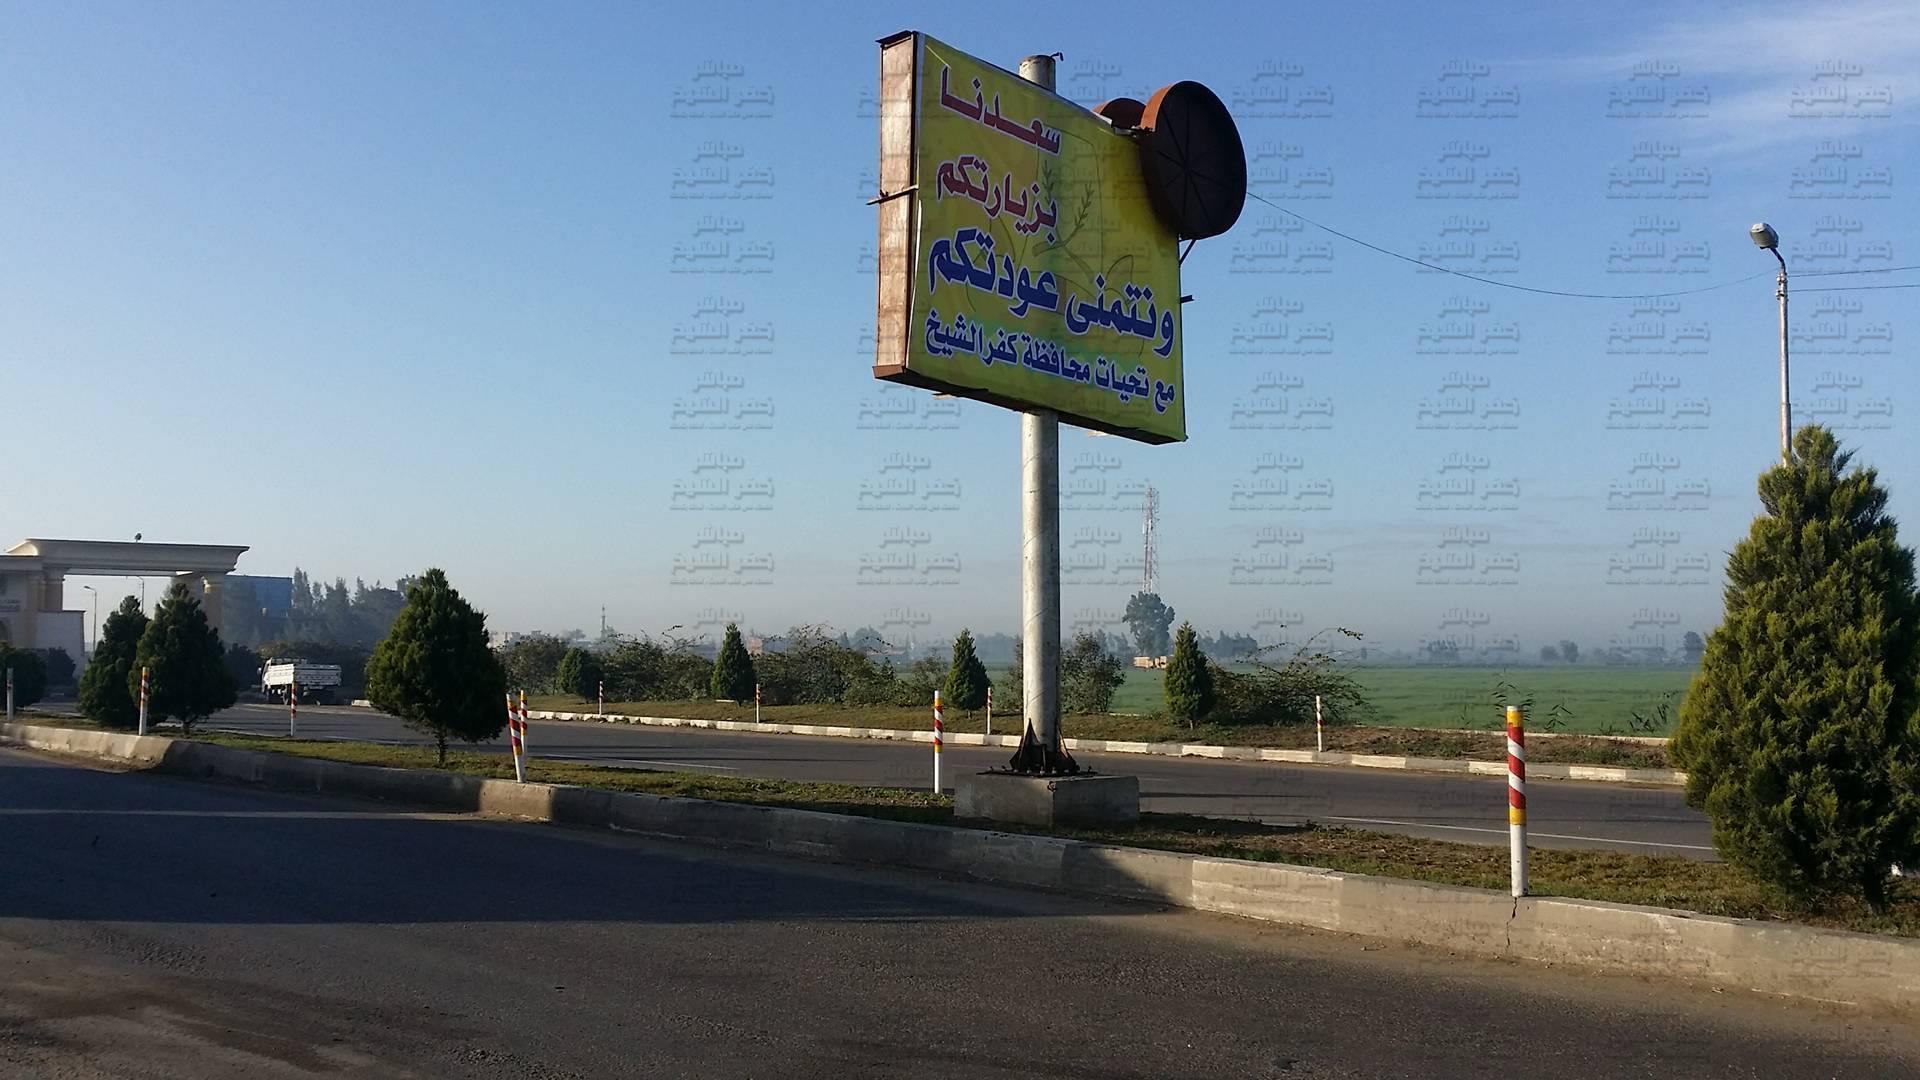  بالفيديو والصور : مواطن يتهم مجلس مدينة كفرالشيخ بالاستيلاء على اللافته الإعلانيه الخاصه به